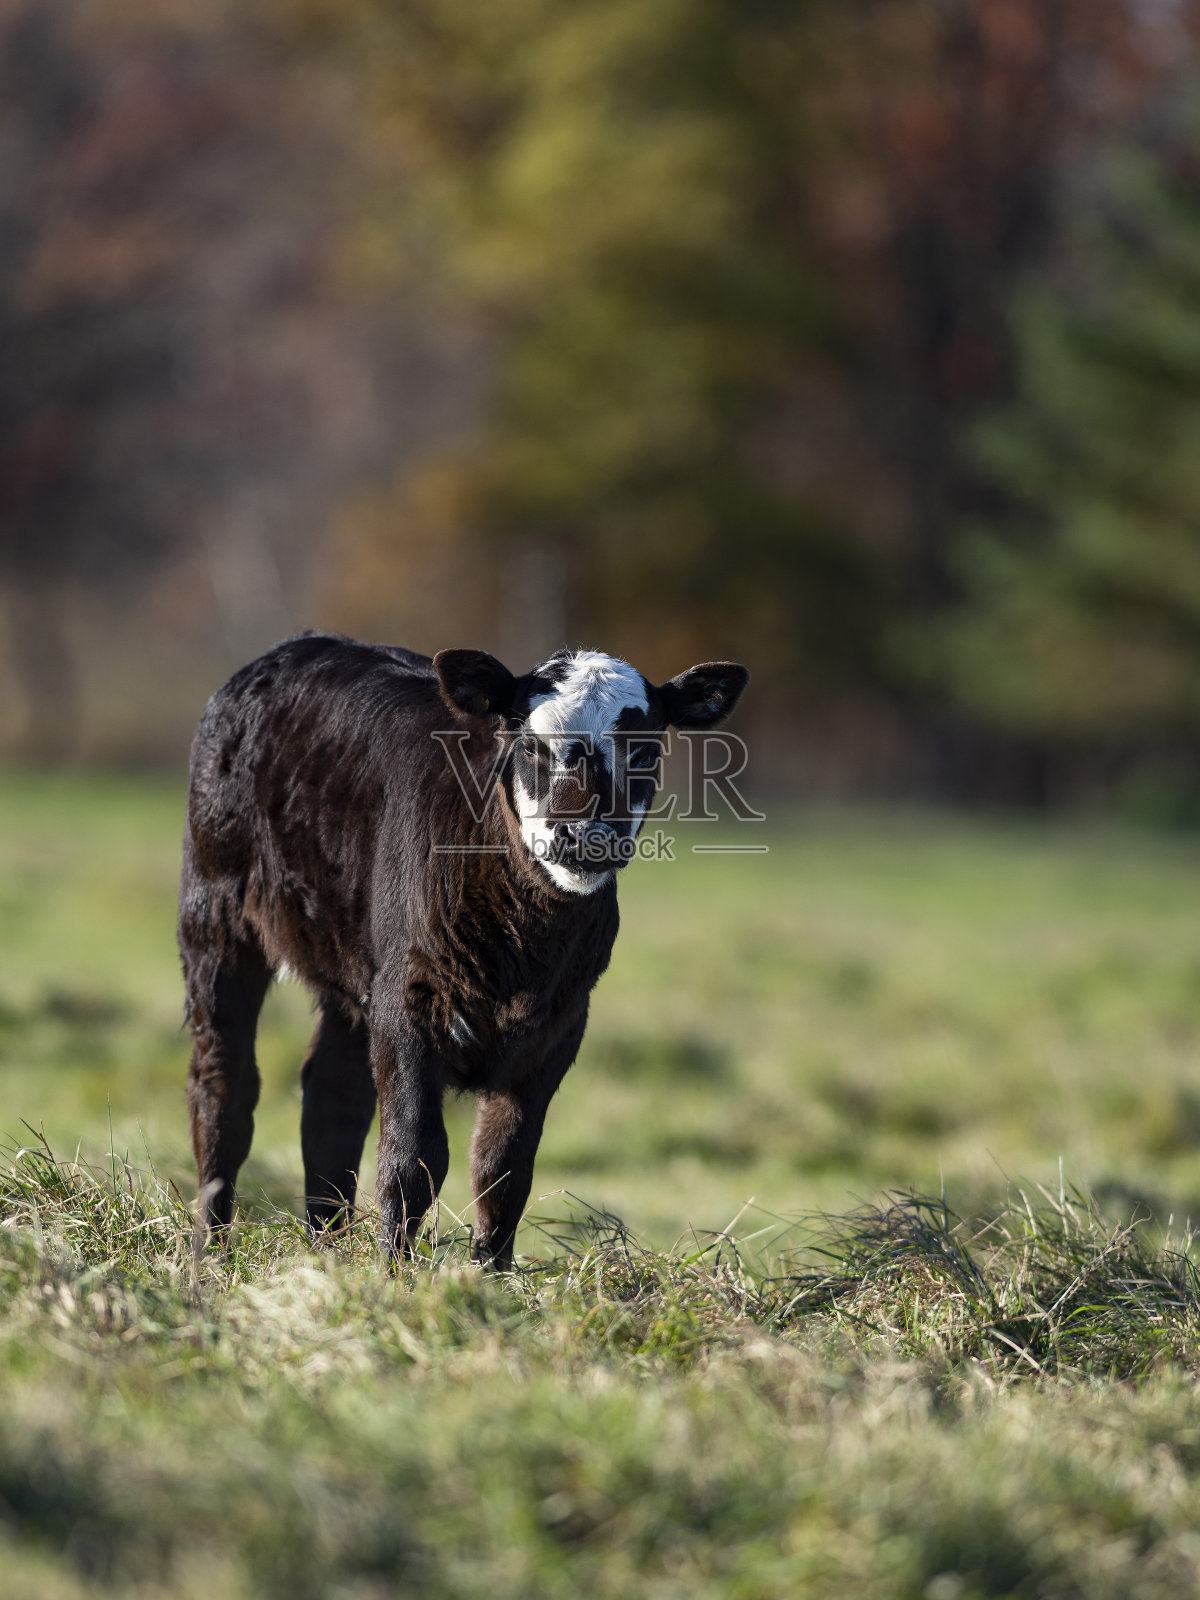 牧场上的黑安格斯小牛犊照片摄影图片